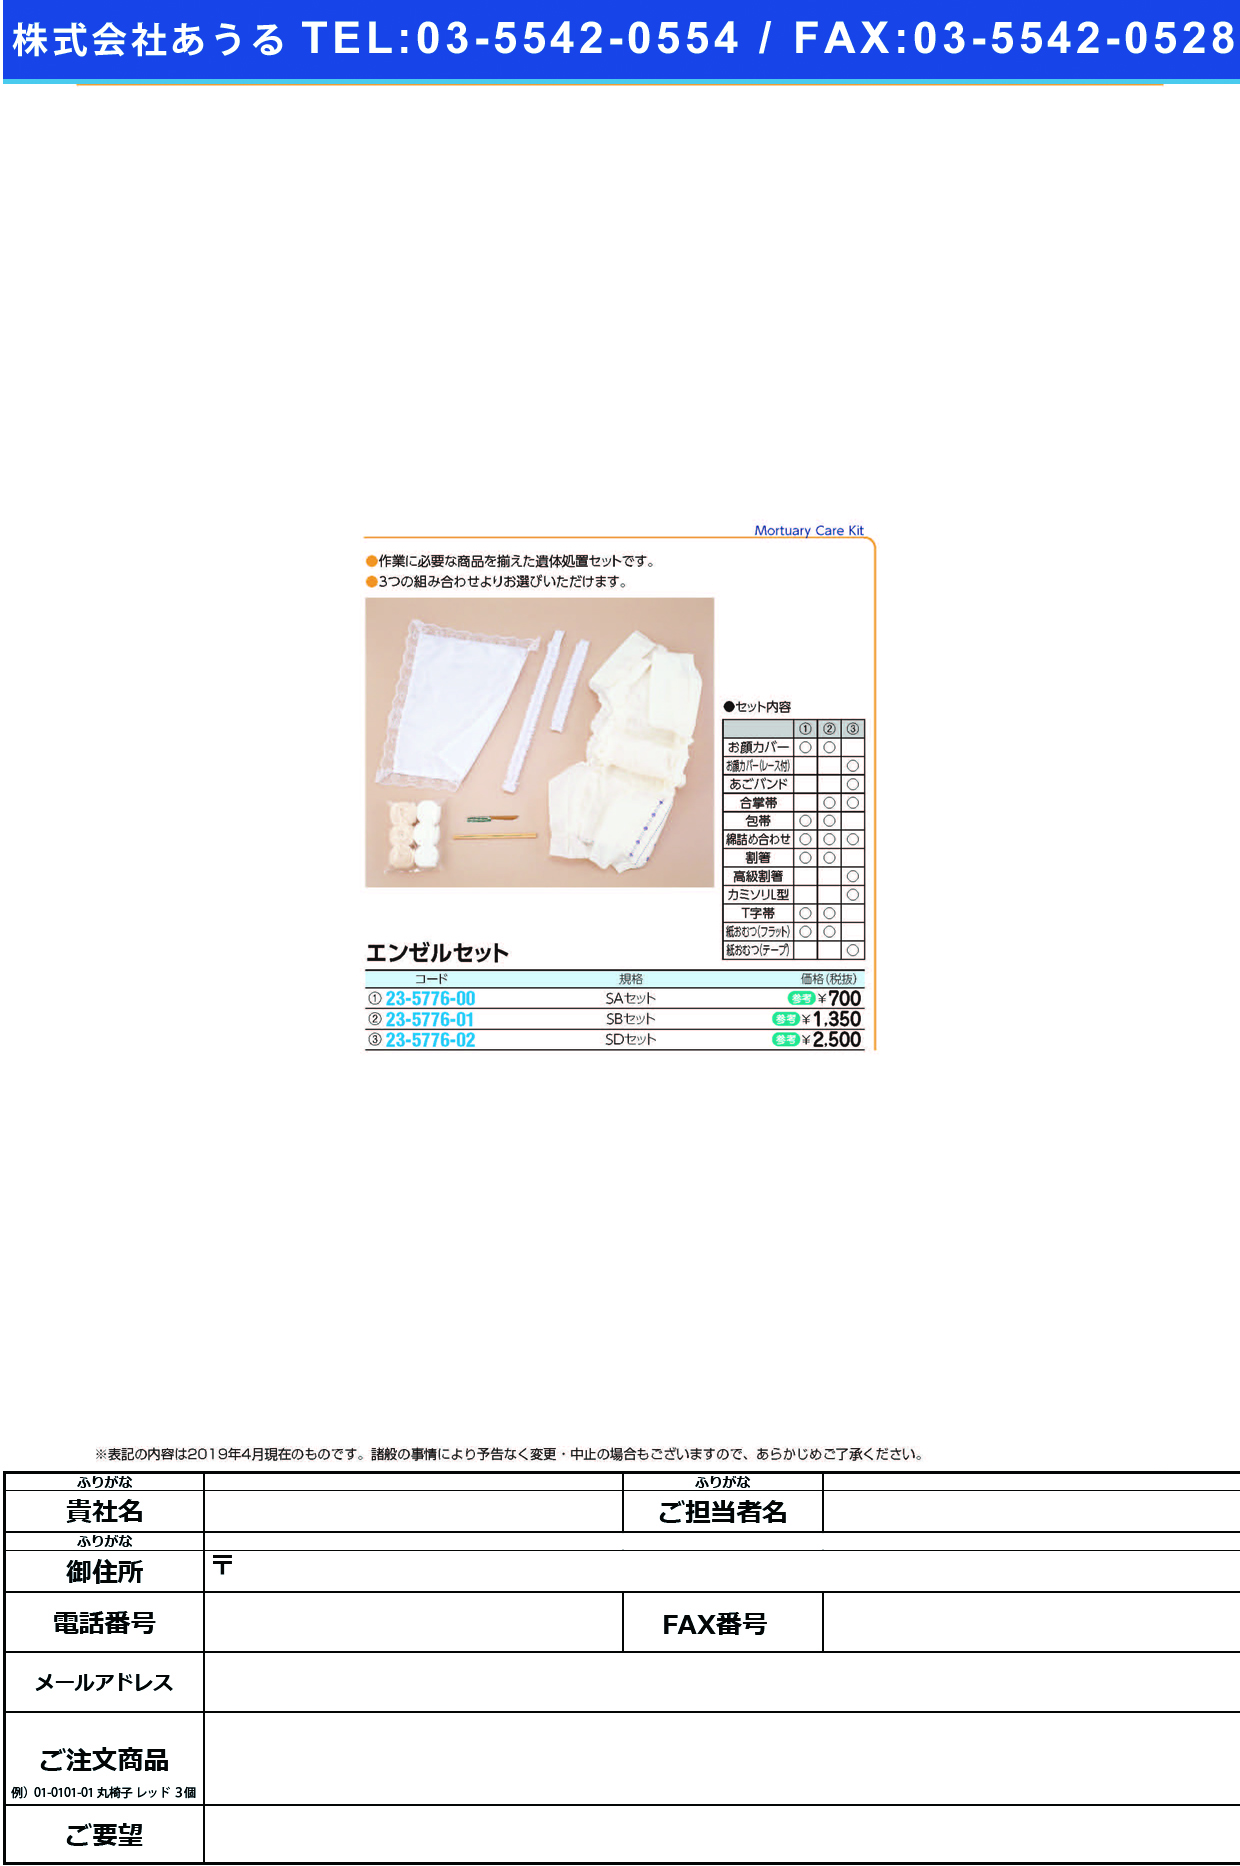 (23-5776-02)エンゼルセットＳＤタイプ 40781 ｴﾝｾﾞﾙｾｯﾄSDﾀｲﾌﾟ(イワツキ)【1個単位】【2019年カタログ商品】